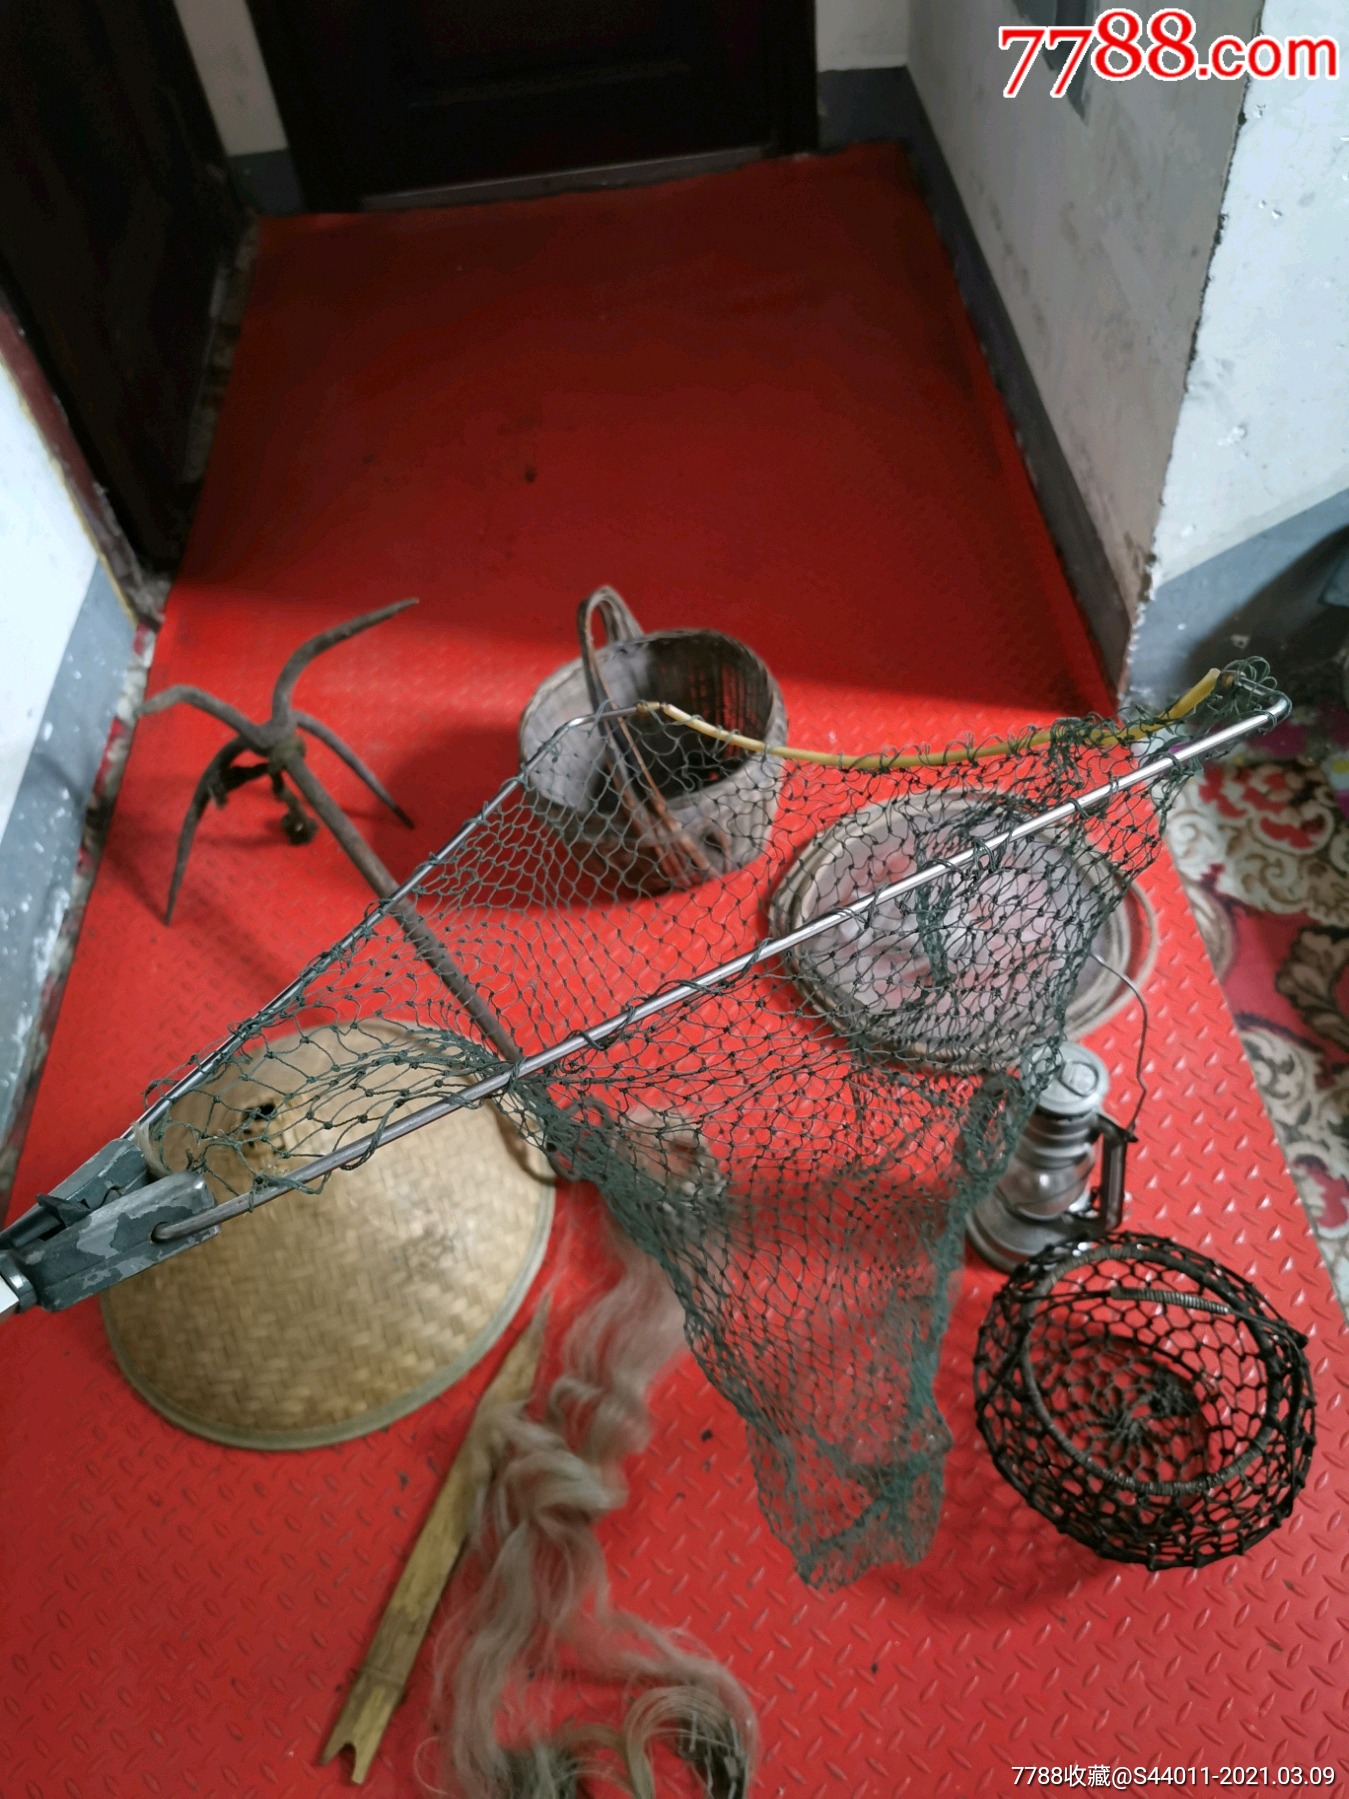 老渔具,捕鱼工具,老民俗